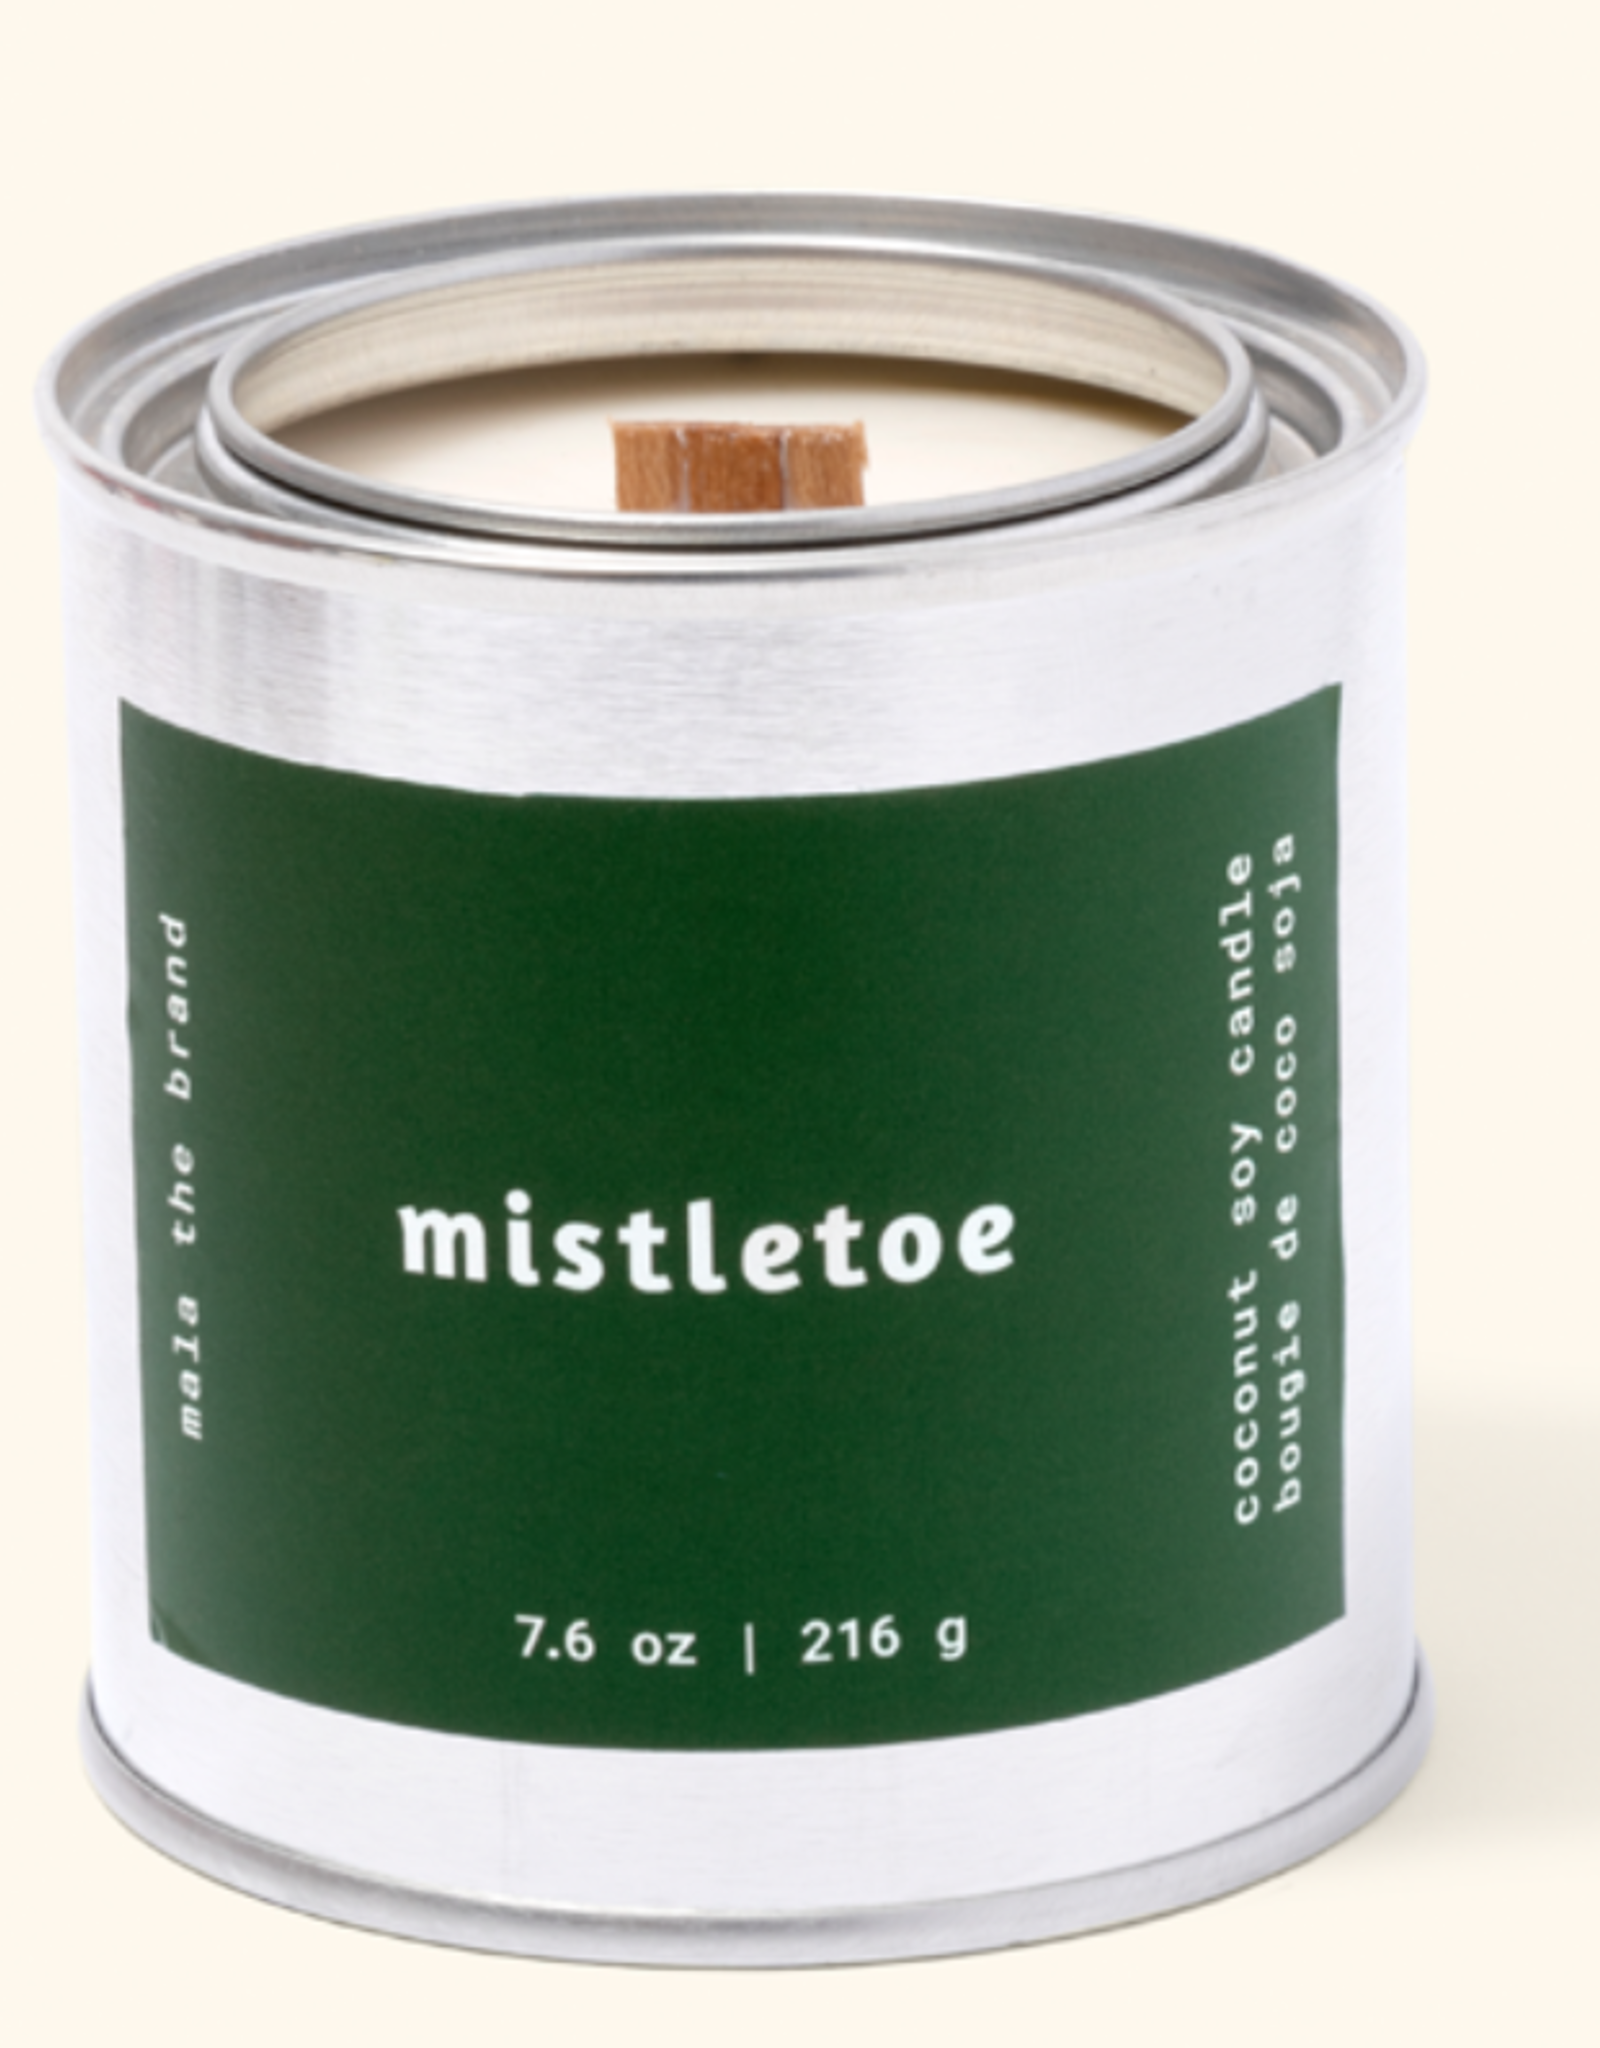 Mala Mala -Mistletoe Candle 8 oz